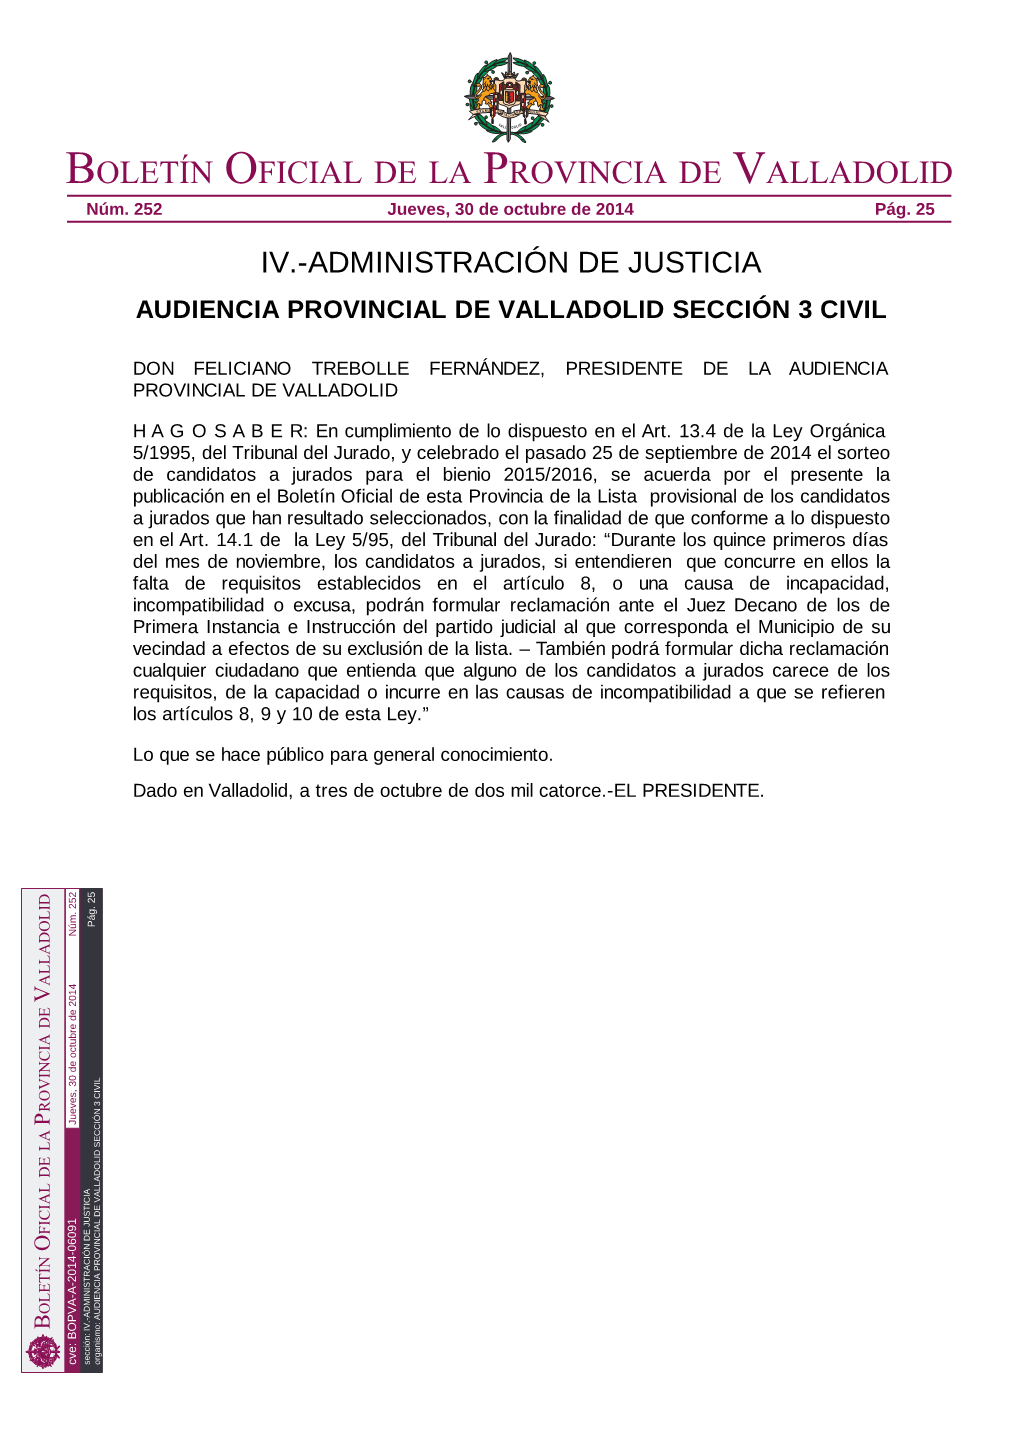 Audiencia Provincial De Valladolid Sección 3 Civil